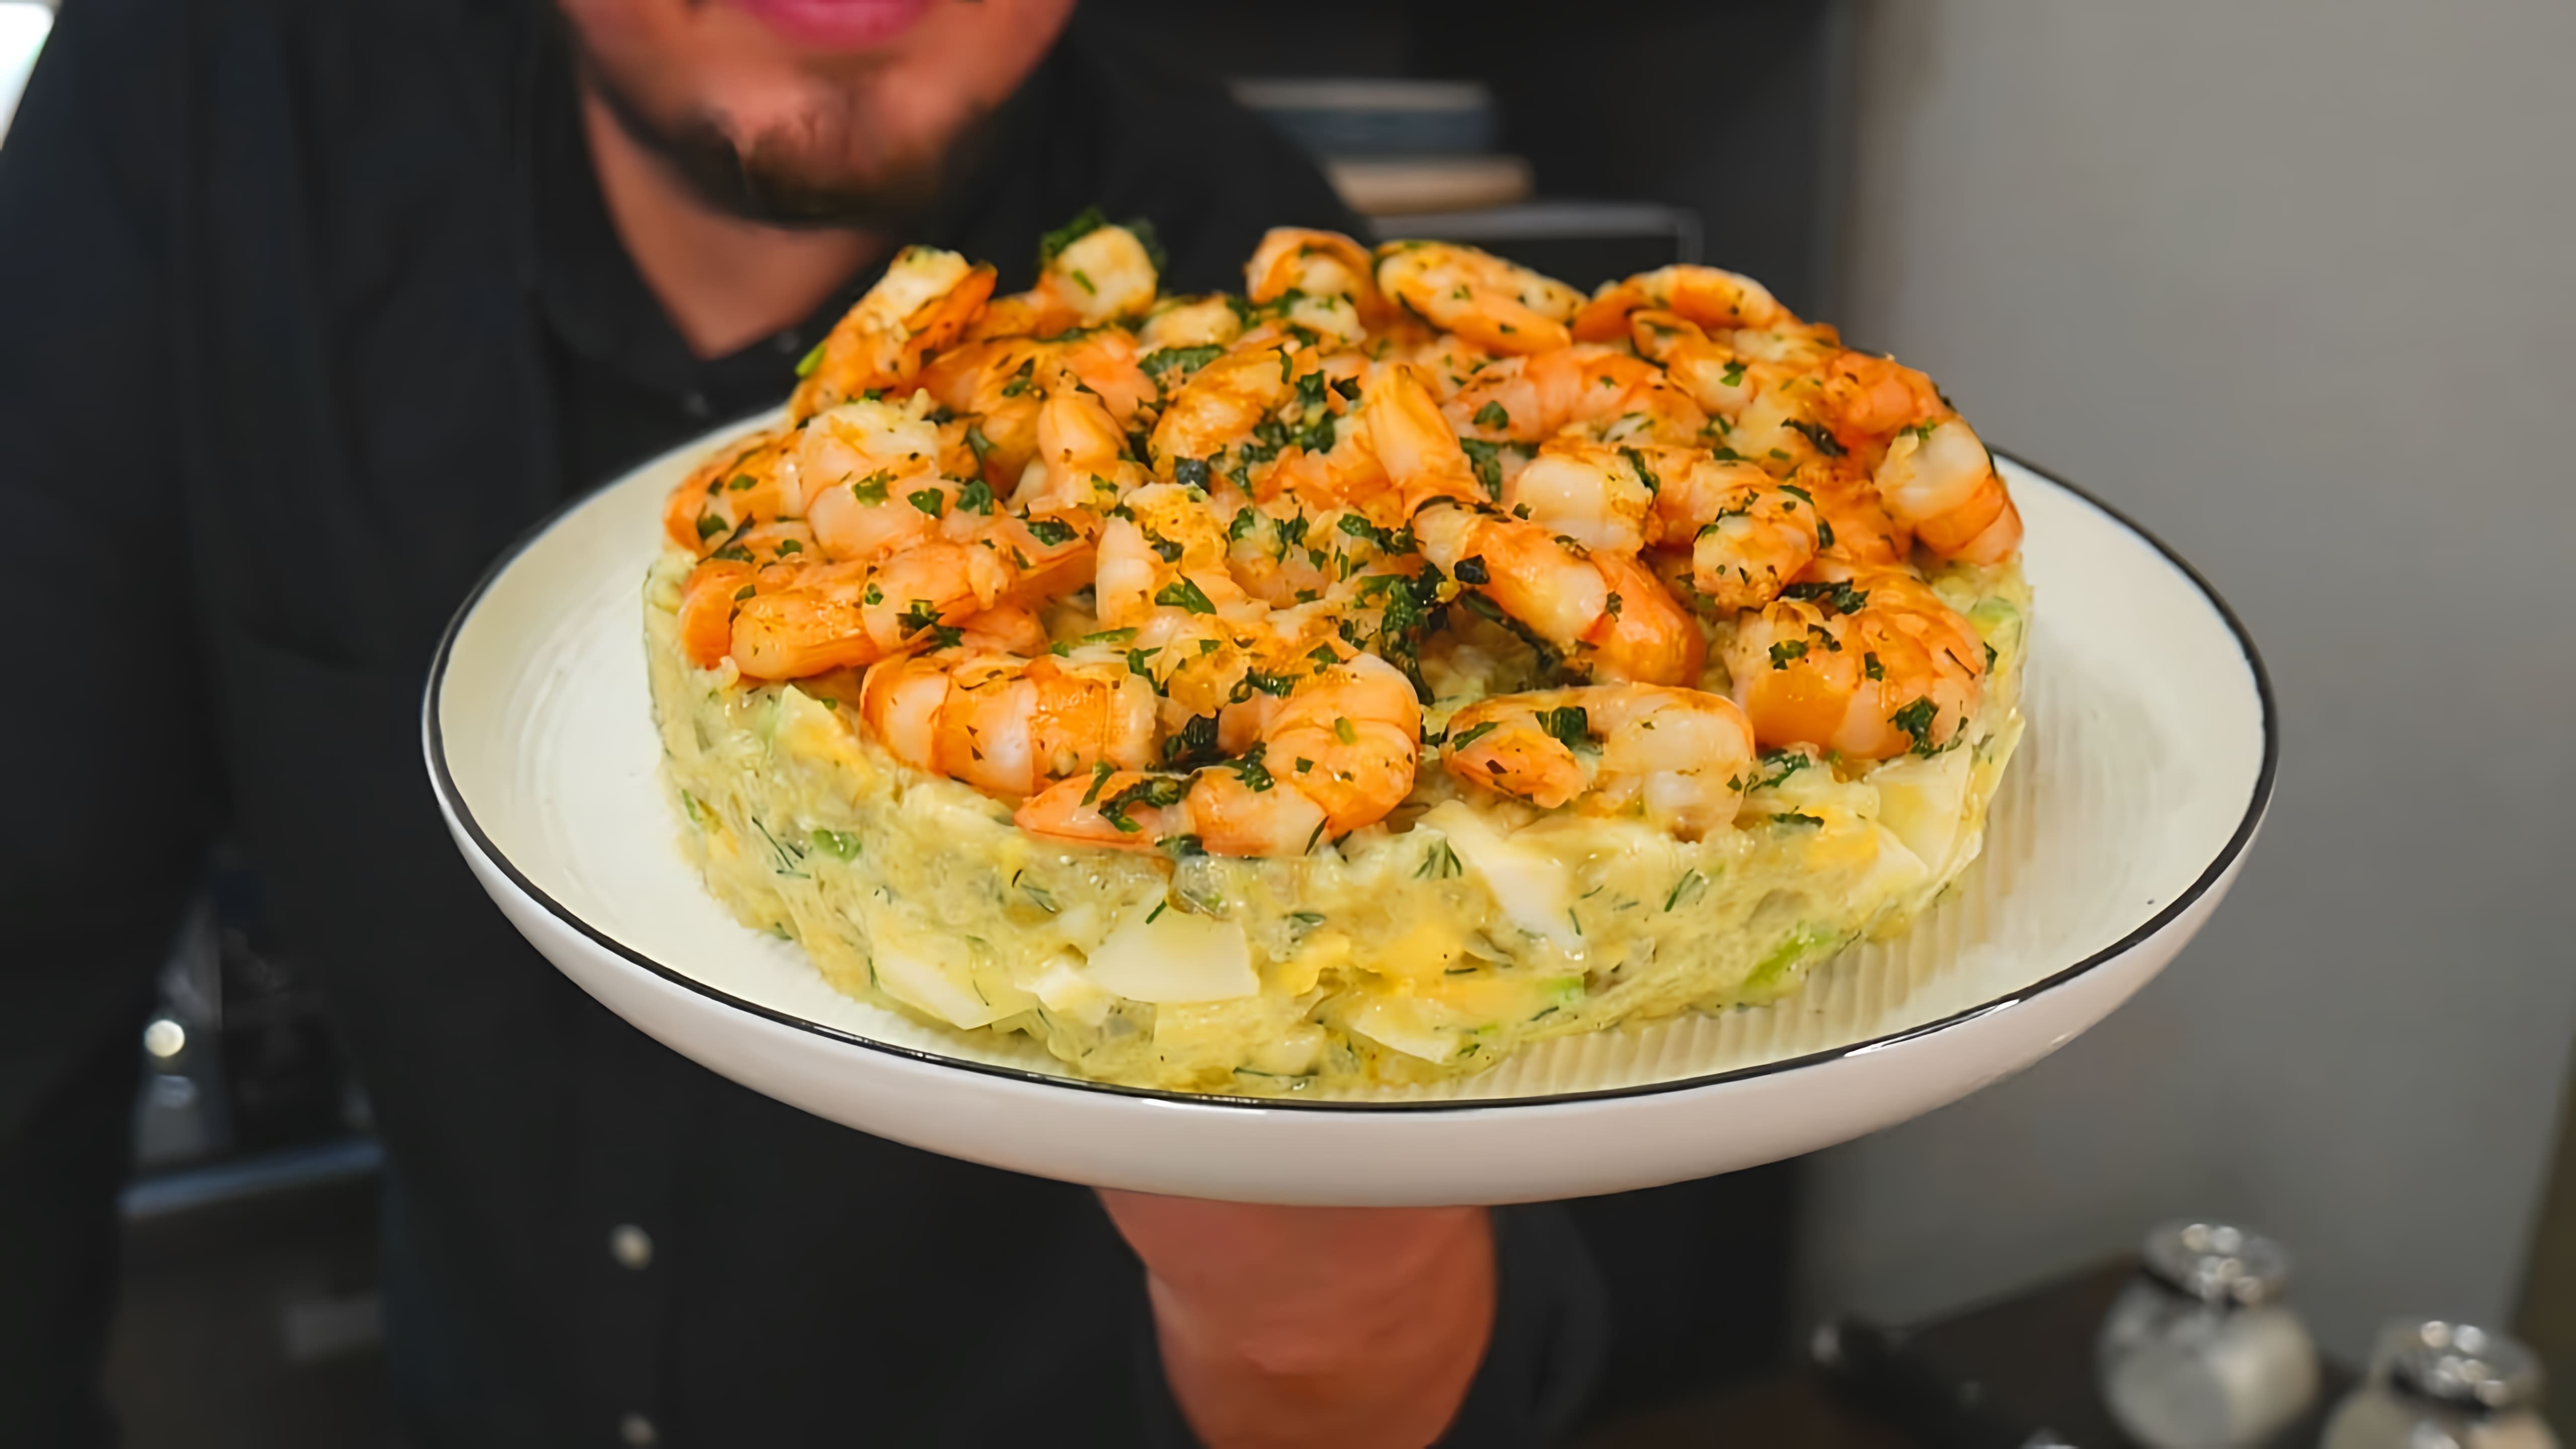 В этом видео демонстрируется рецепт салата с креветками, который является хитом сезона на праздничном столе